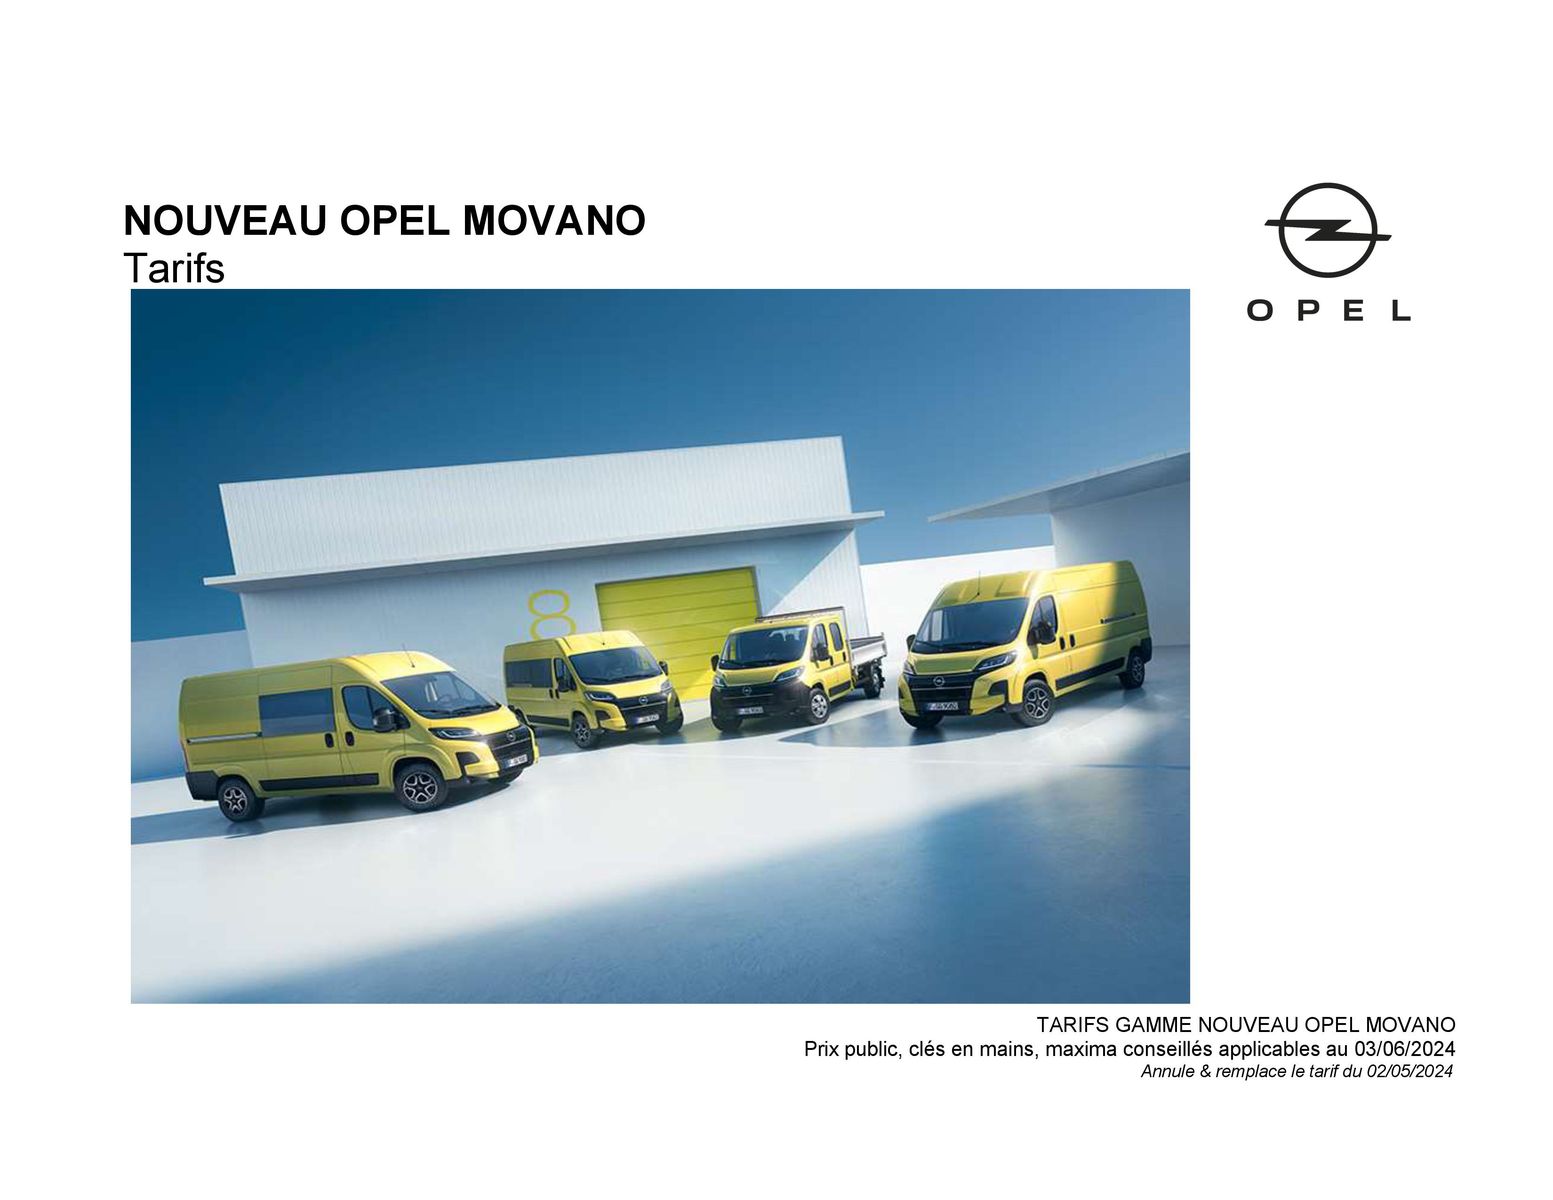 Catalogue Opel Nouveau Movano, page 00001